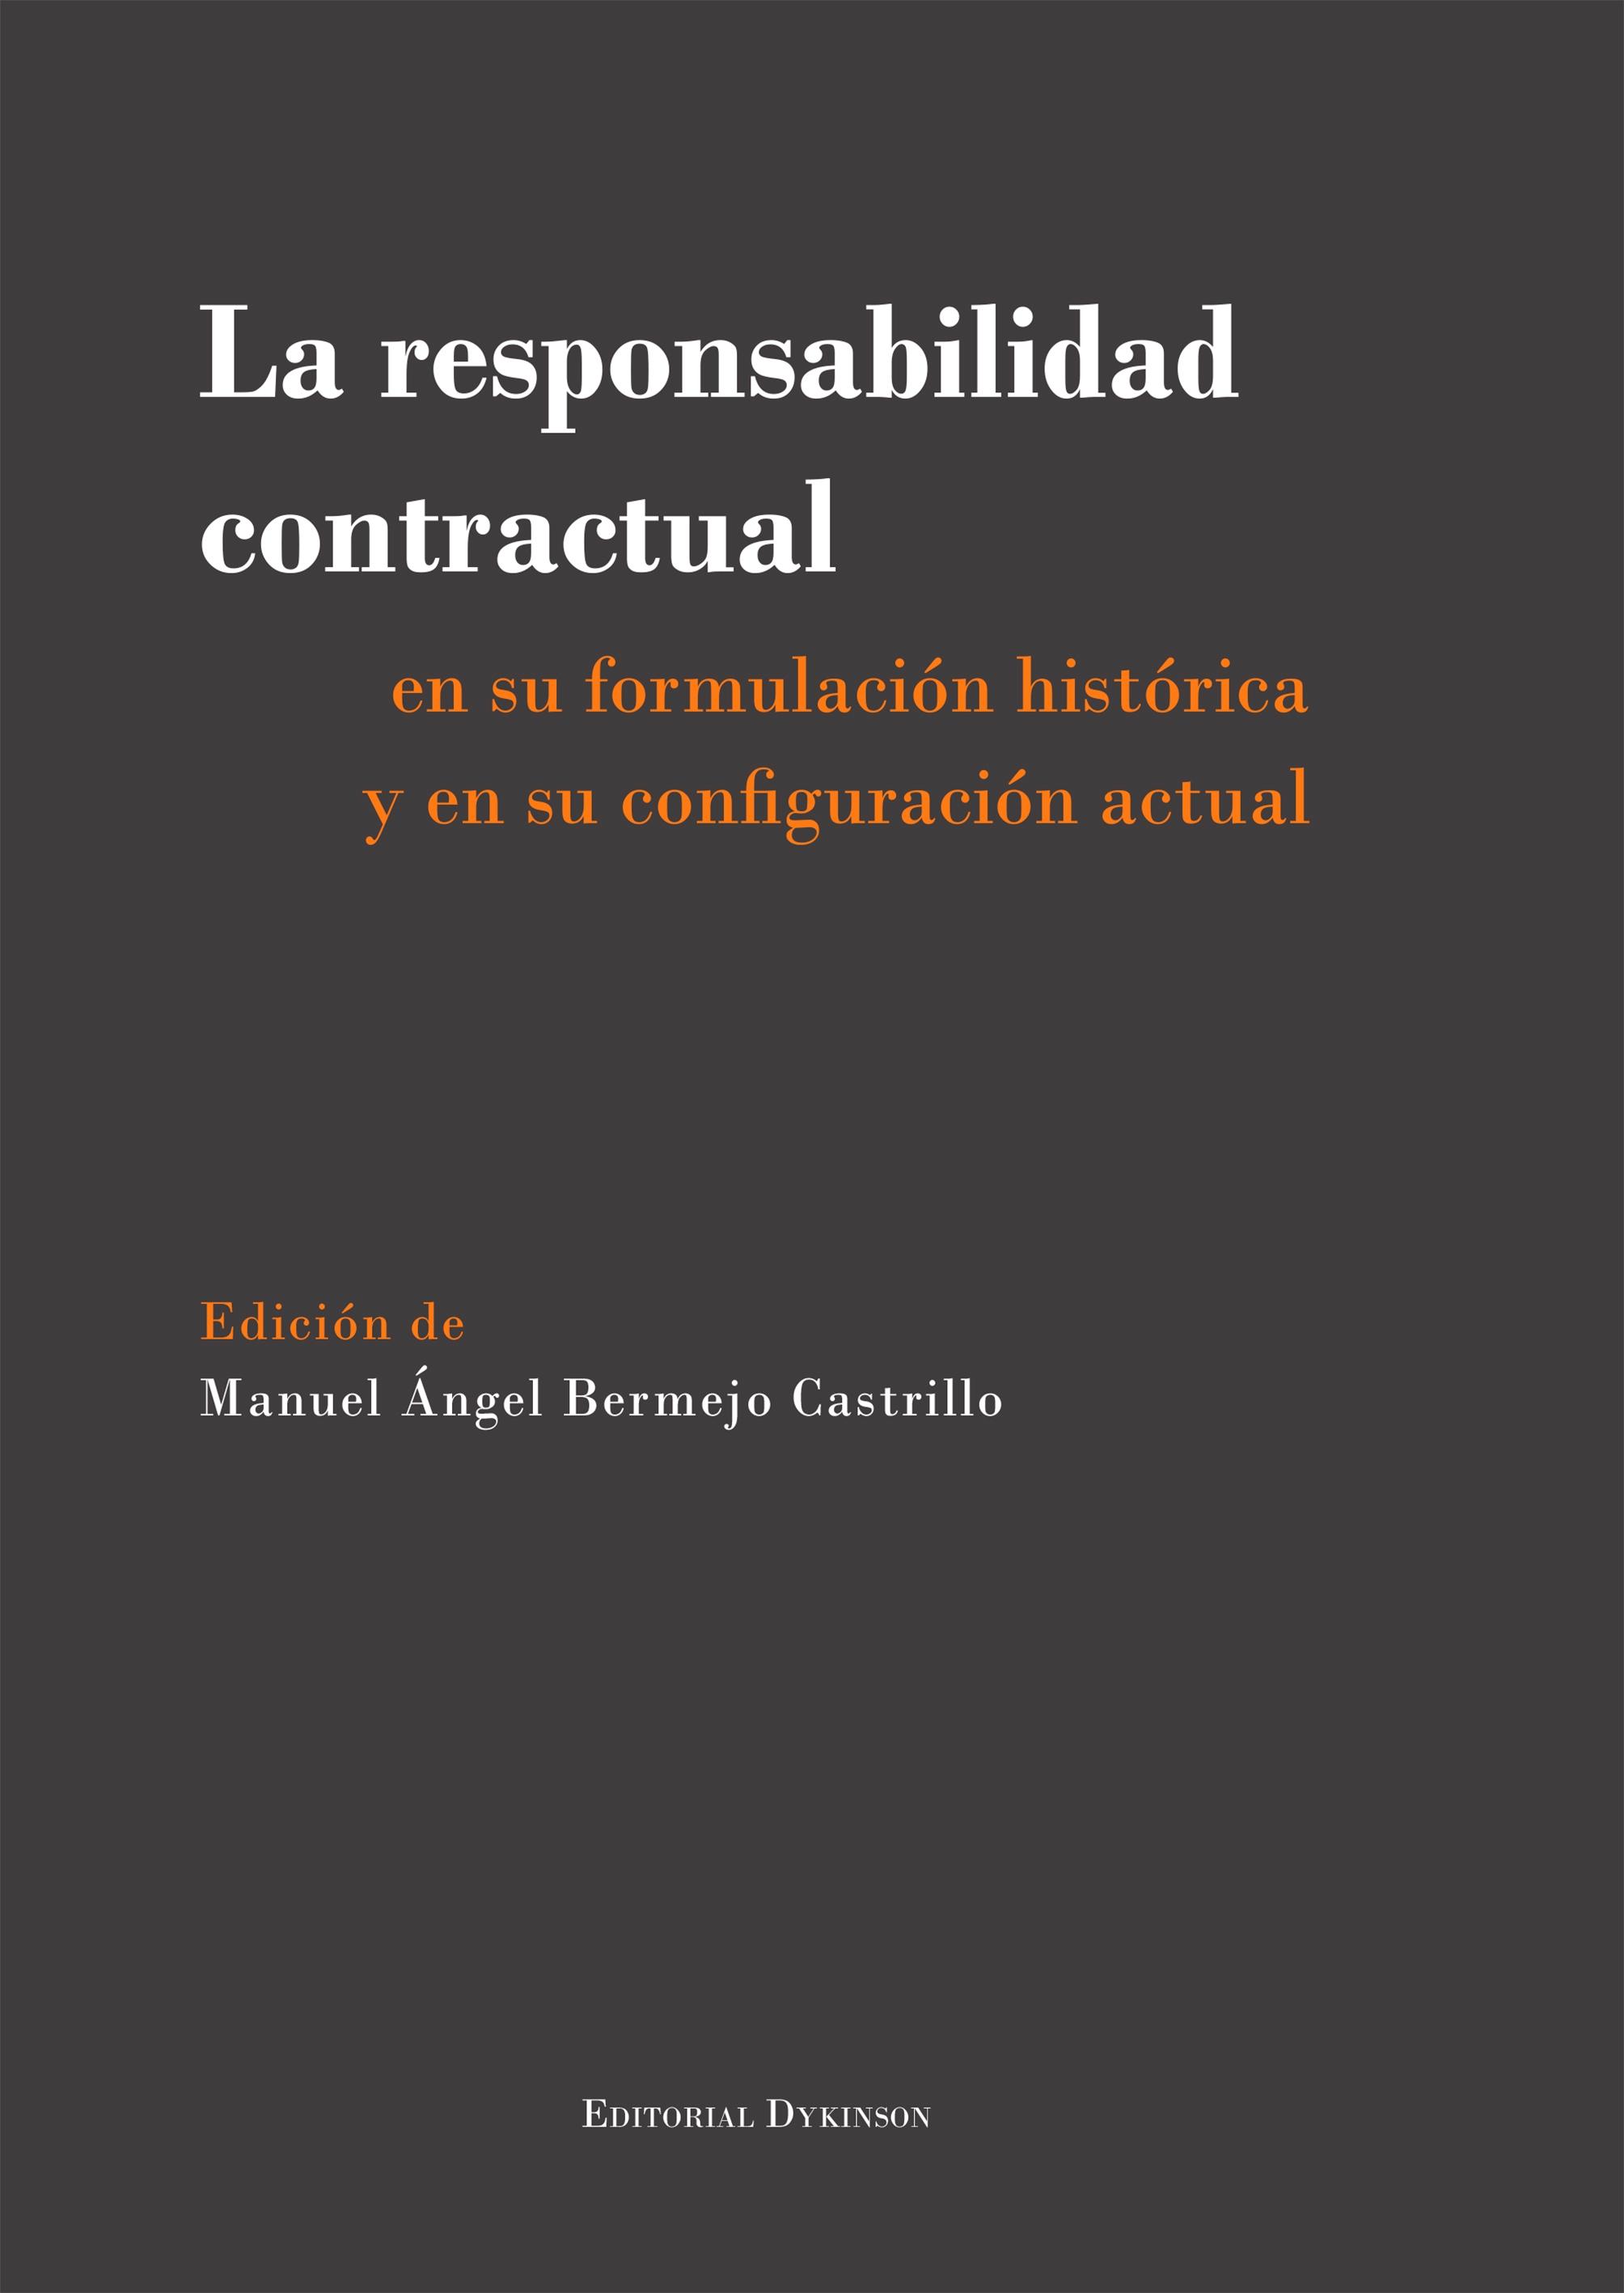 La responsabilidad contractual "en su formulación histórica y en su configuración actual"